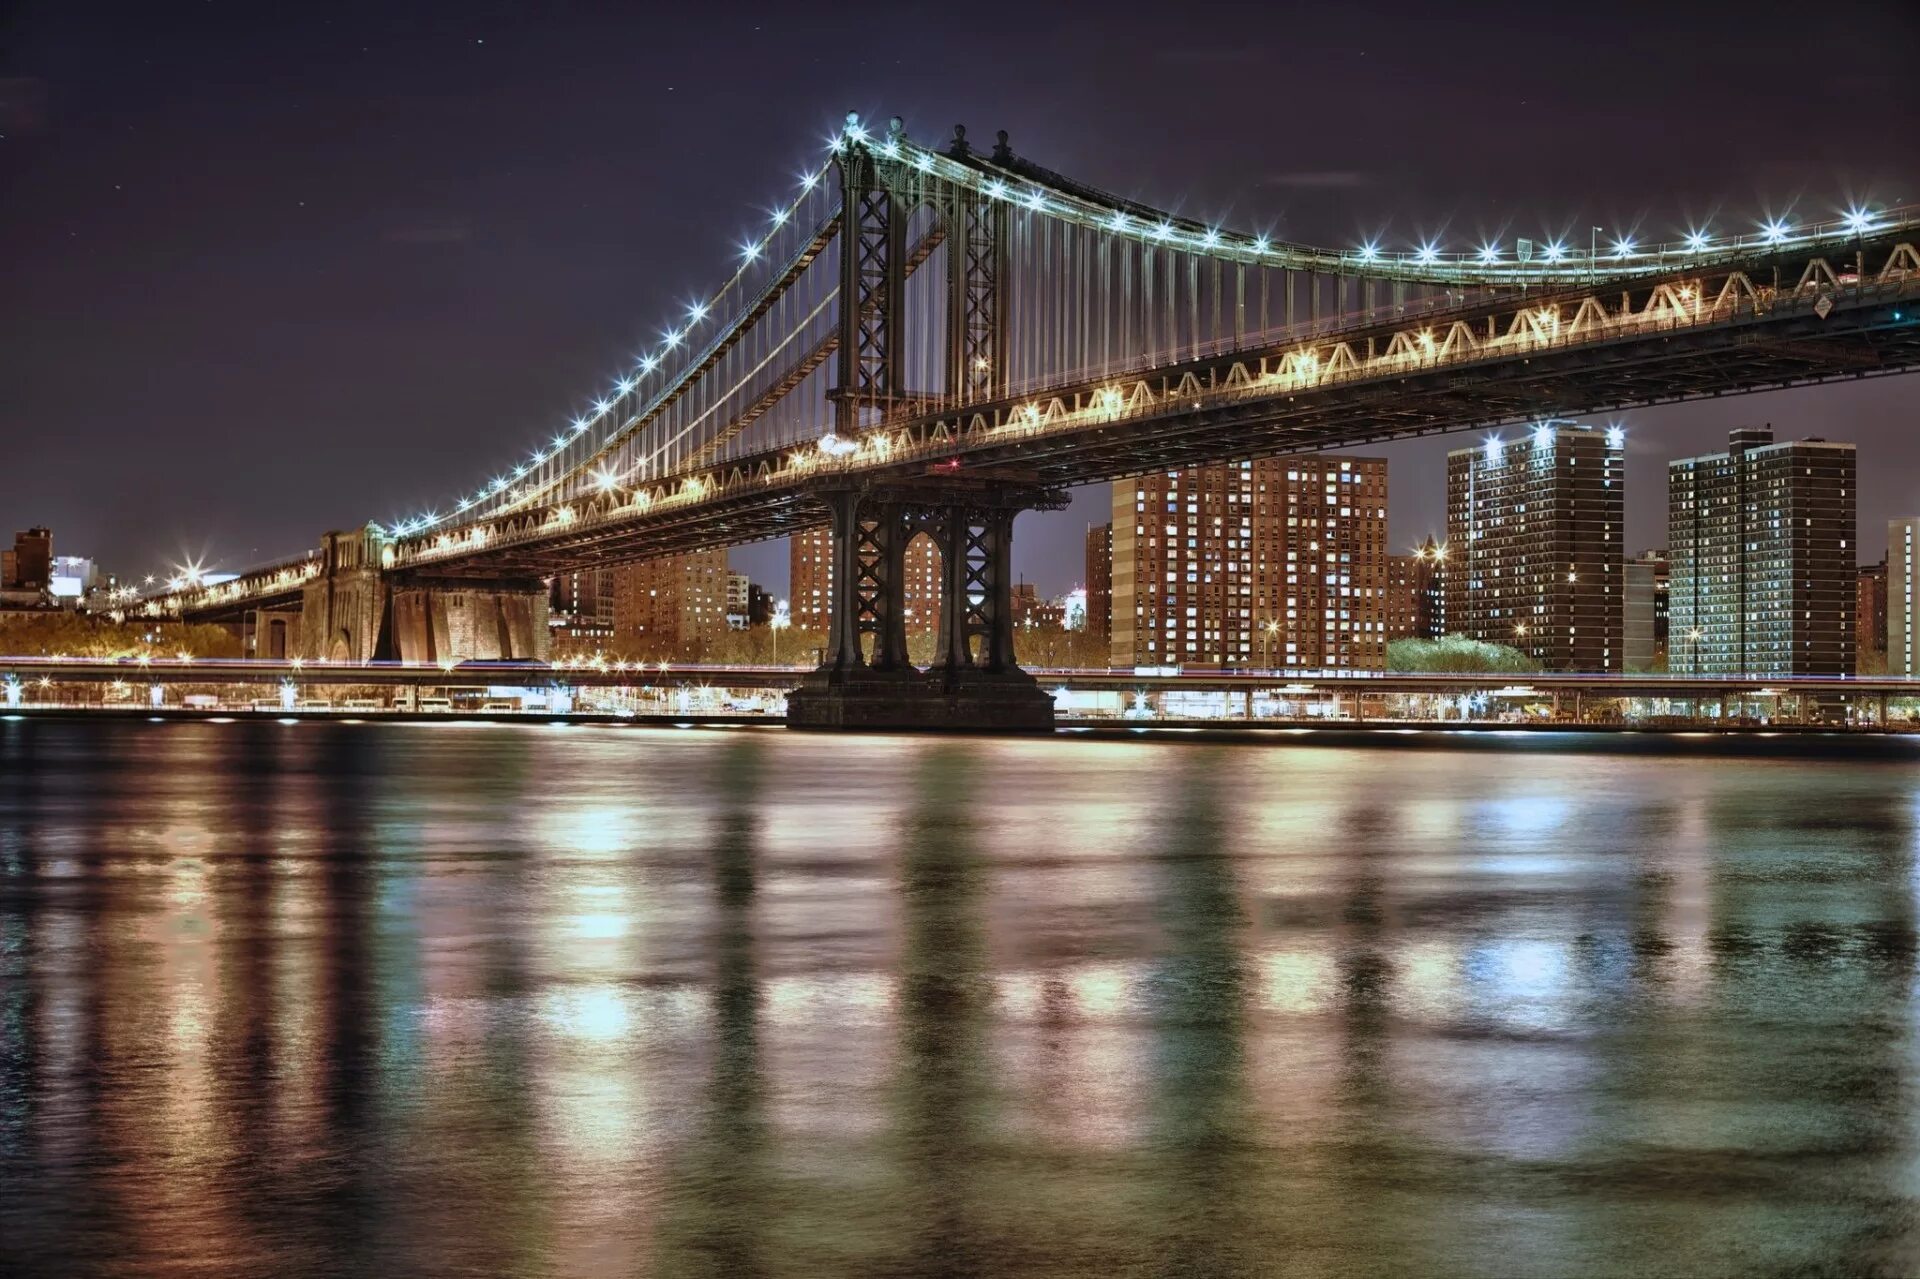 Манхэттенский мост в Нью-Йорке. Бруклинский мост Нью-Йорк. Бруклинский мост Нью-Йорк ночью. Бруклинский мост Манхеттен в Нью-Йорке. Most bi